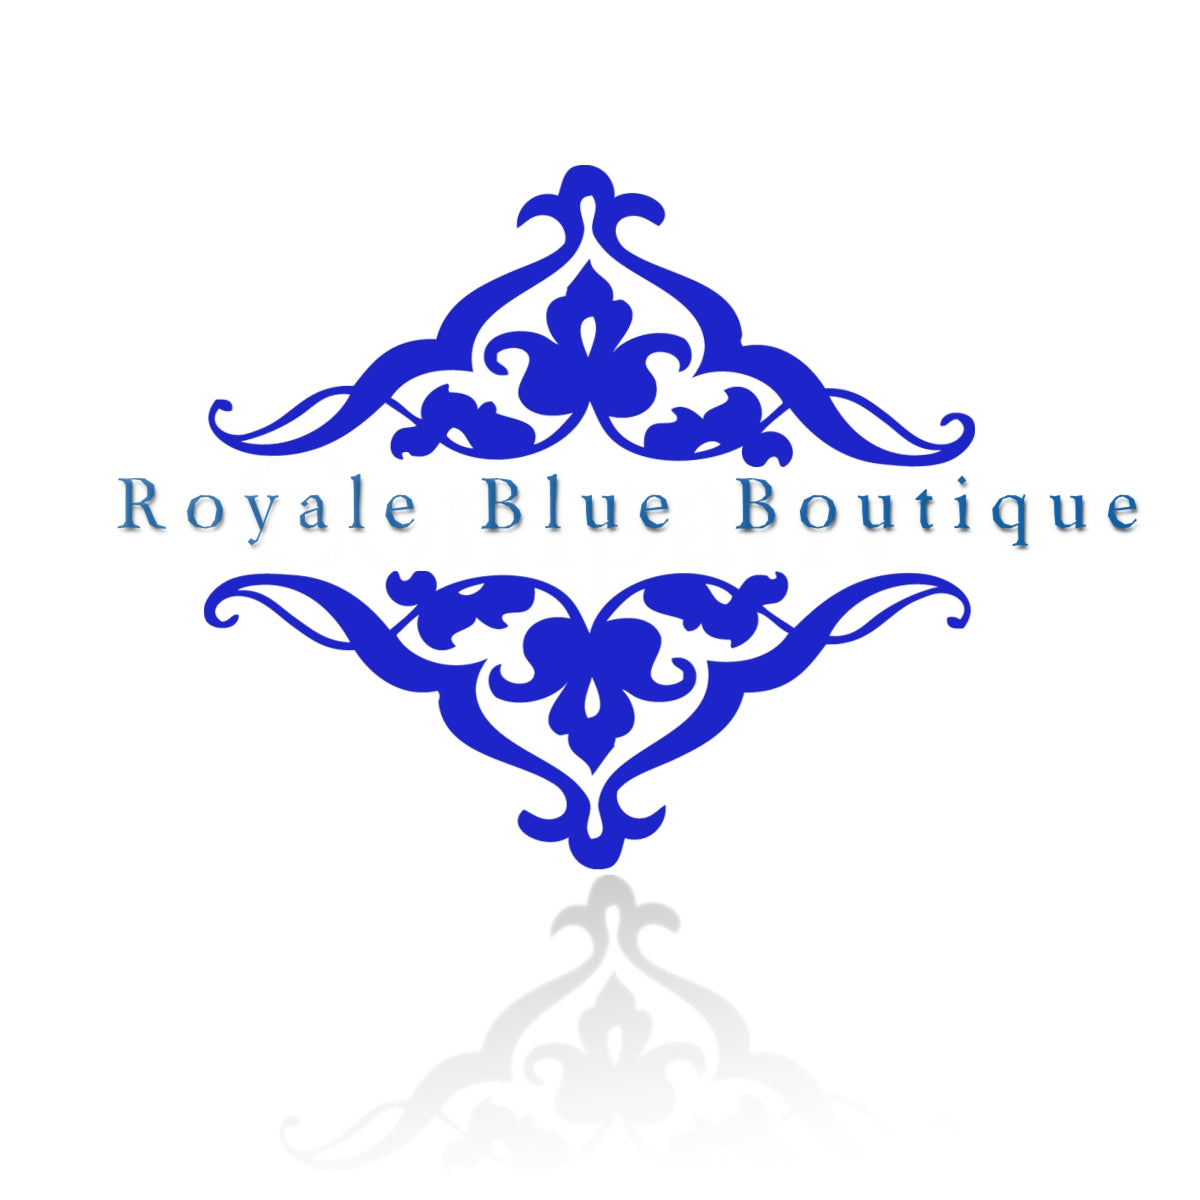 Royal Blue Boutique